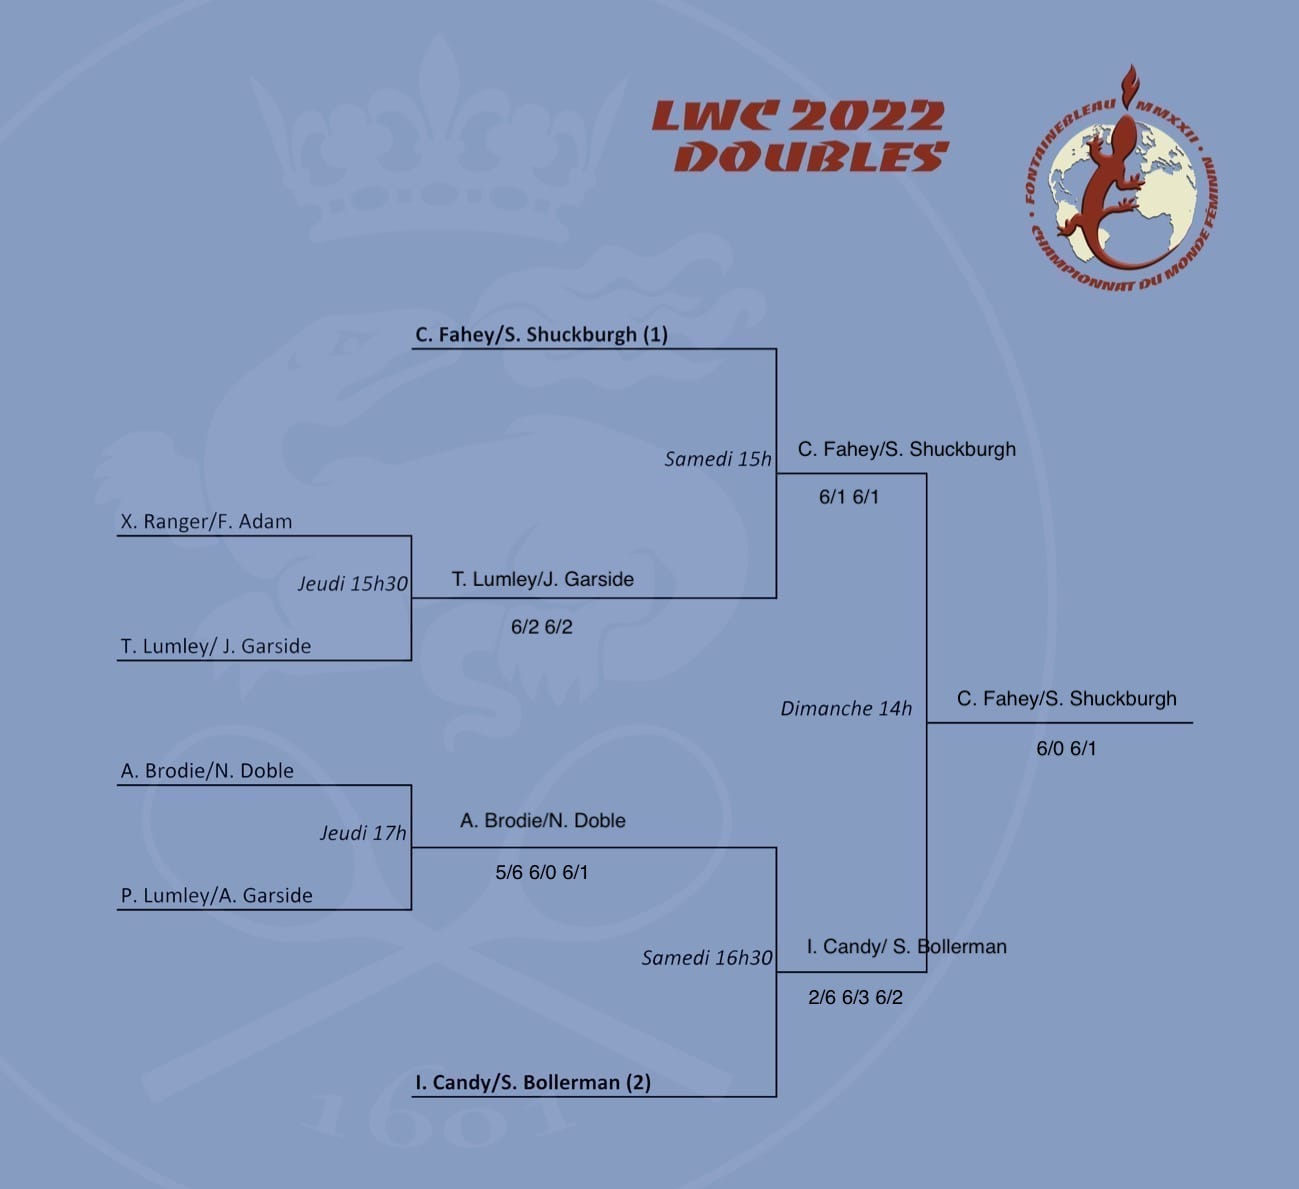 LWC 2022 Doubles Draw